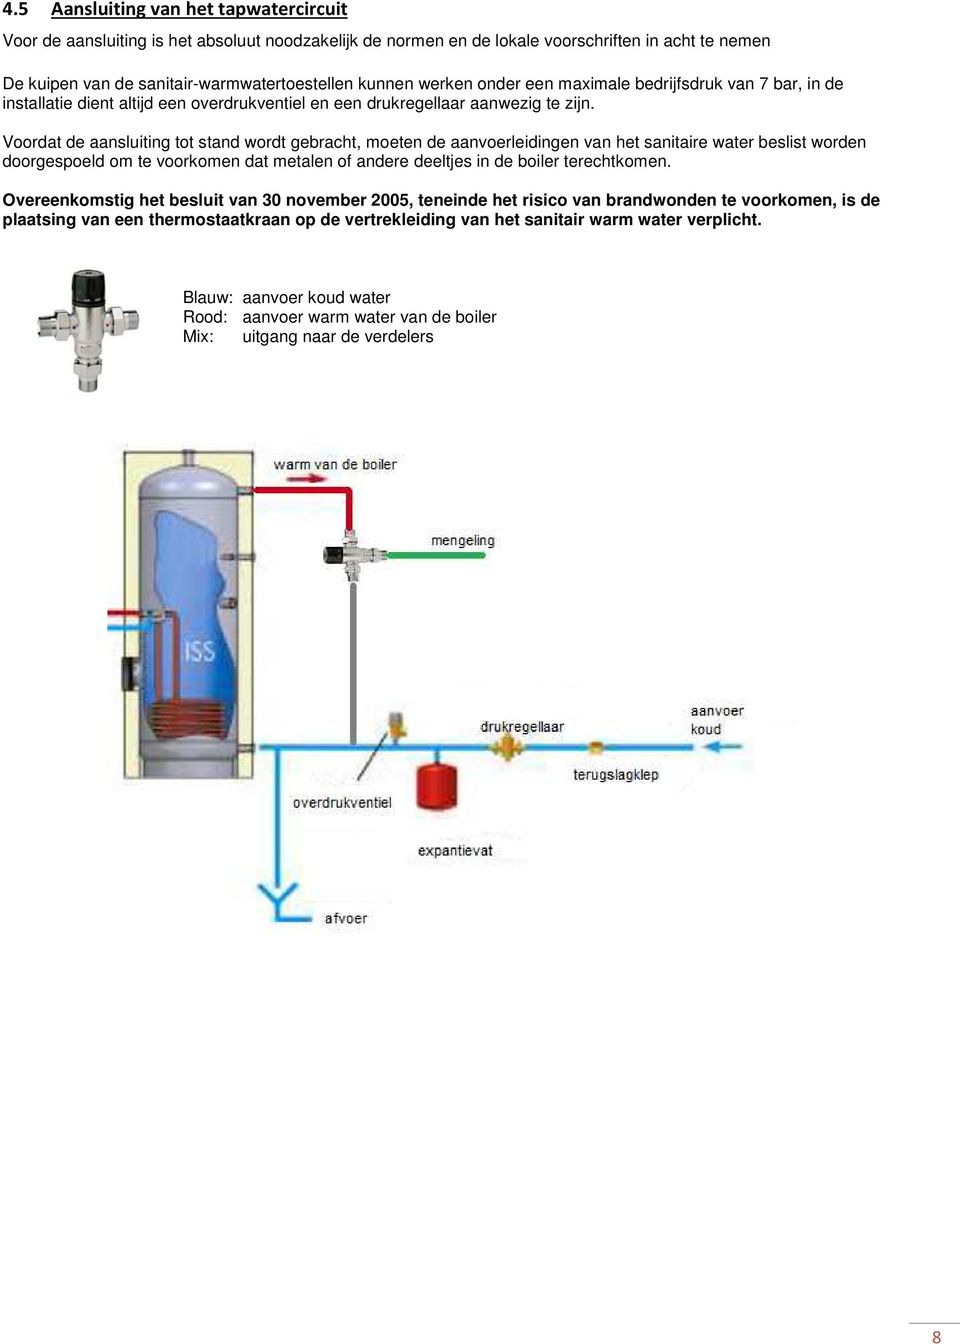 Voordat de aansluiting tot stand wordt gebracht, moeten de aanvoerleidingen van het sanitaire water beslist worden doorgespoeld om te voorkomen dat metalen of andere deeltjes in de boiler